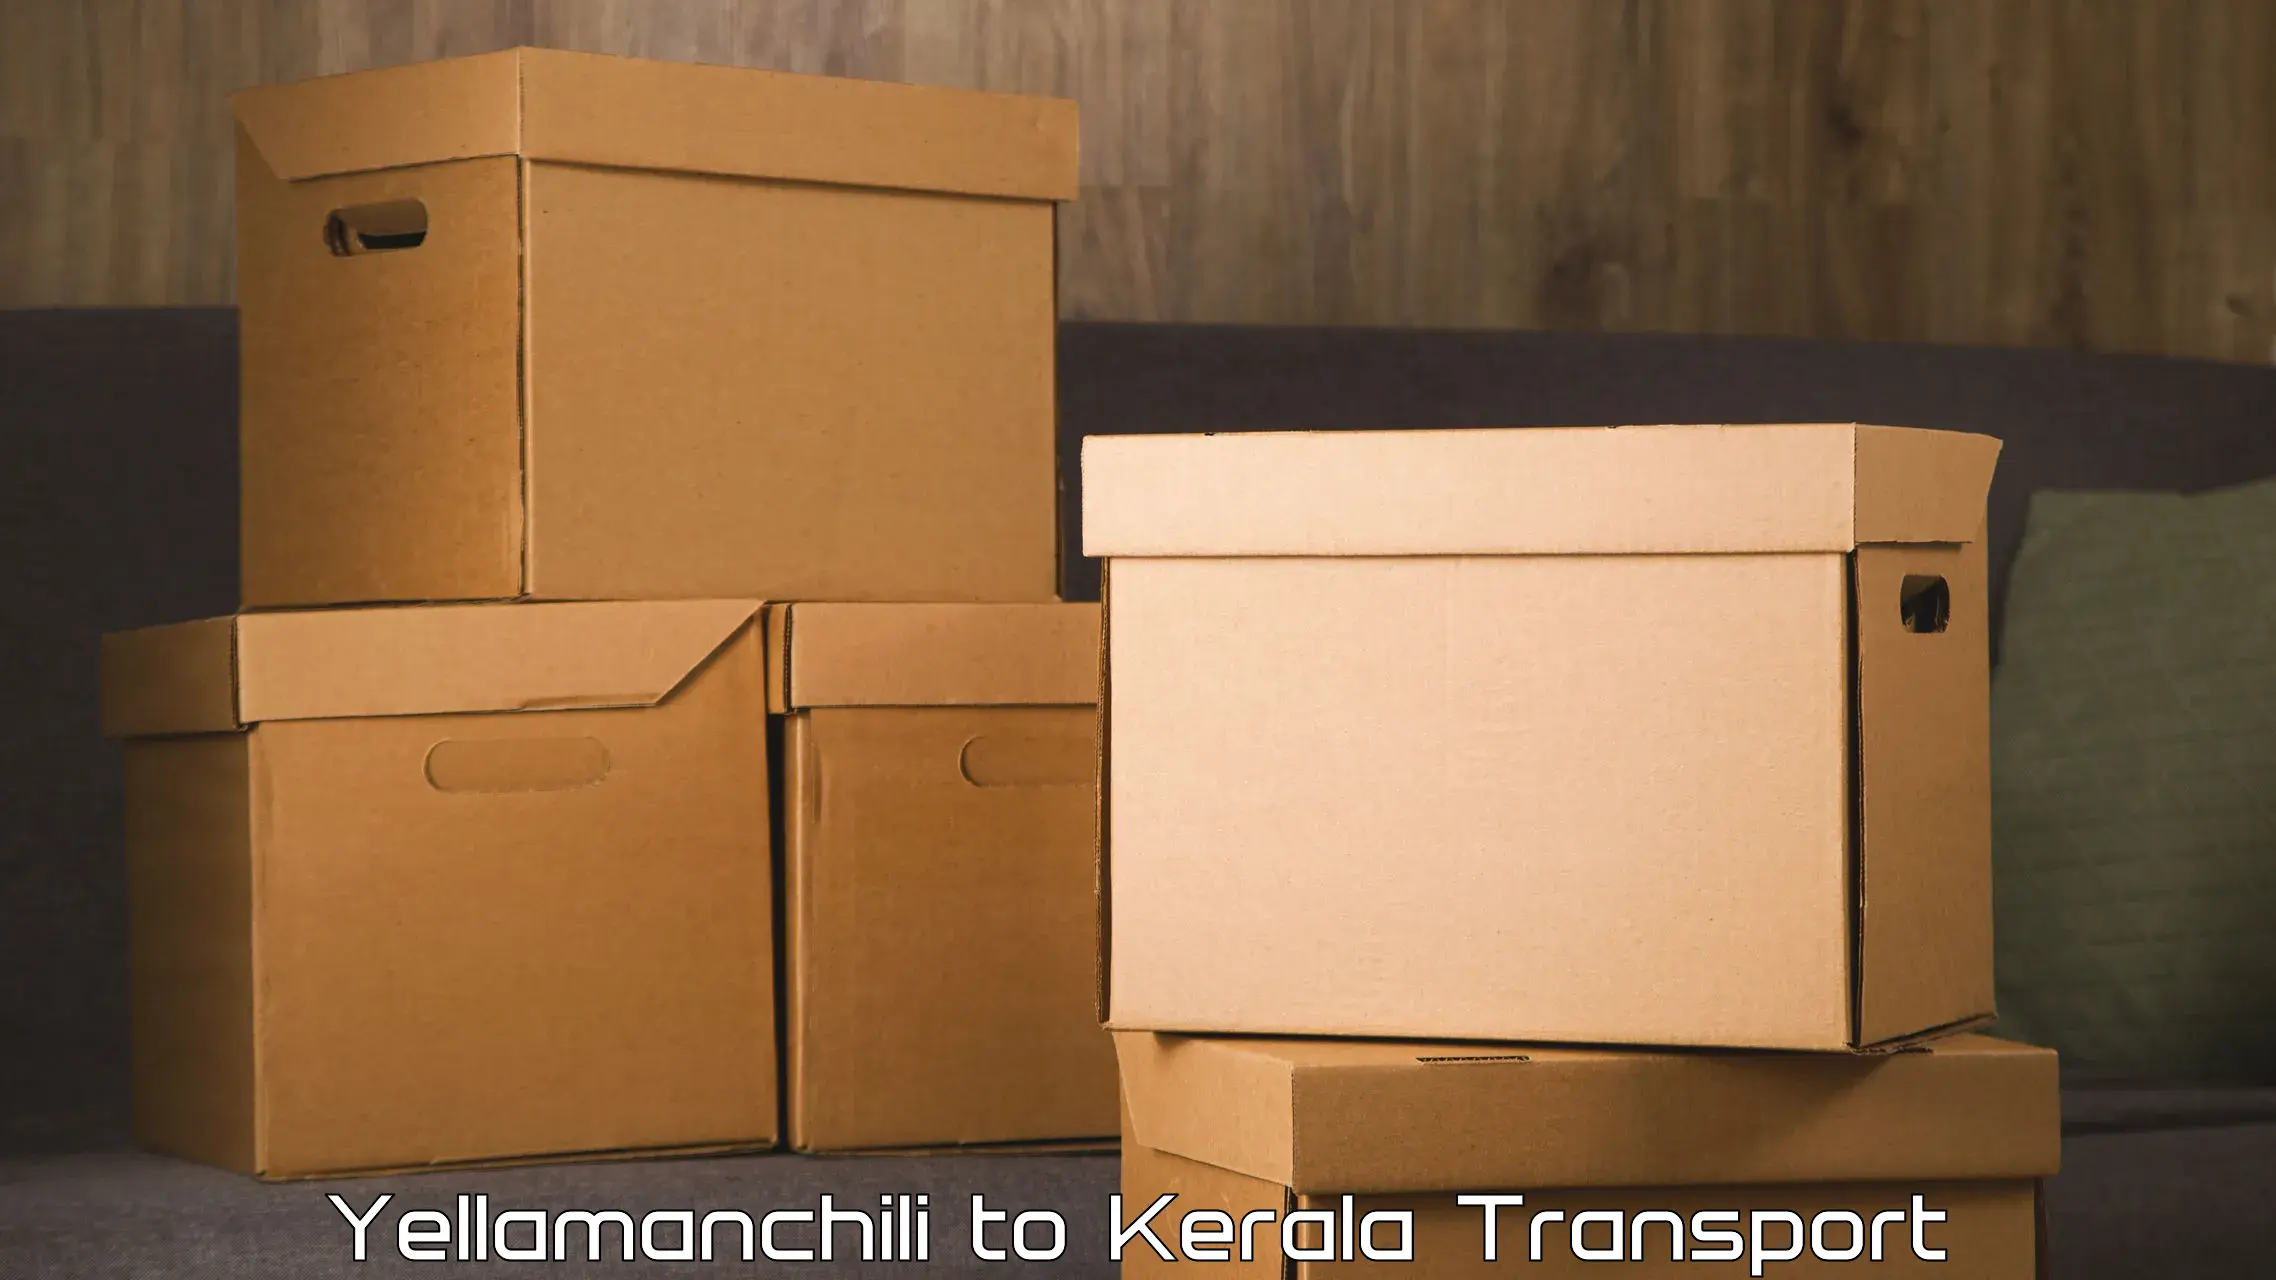 Container transport service Yellamanchili to Kazhakkoottam